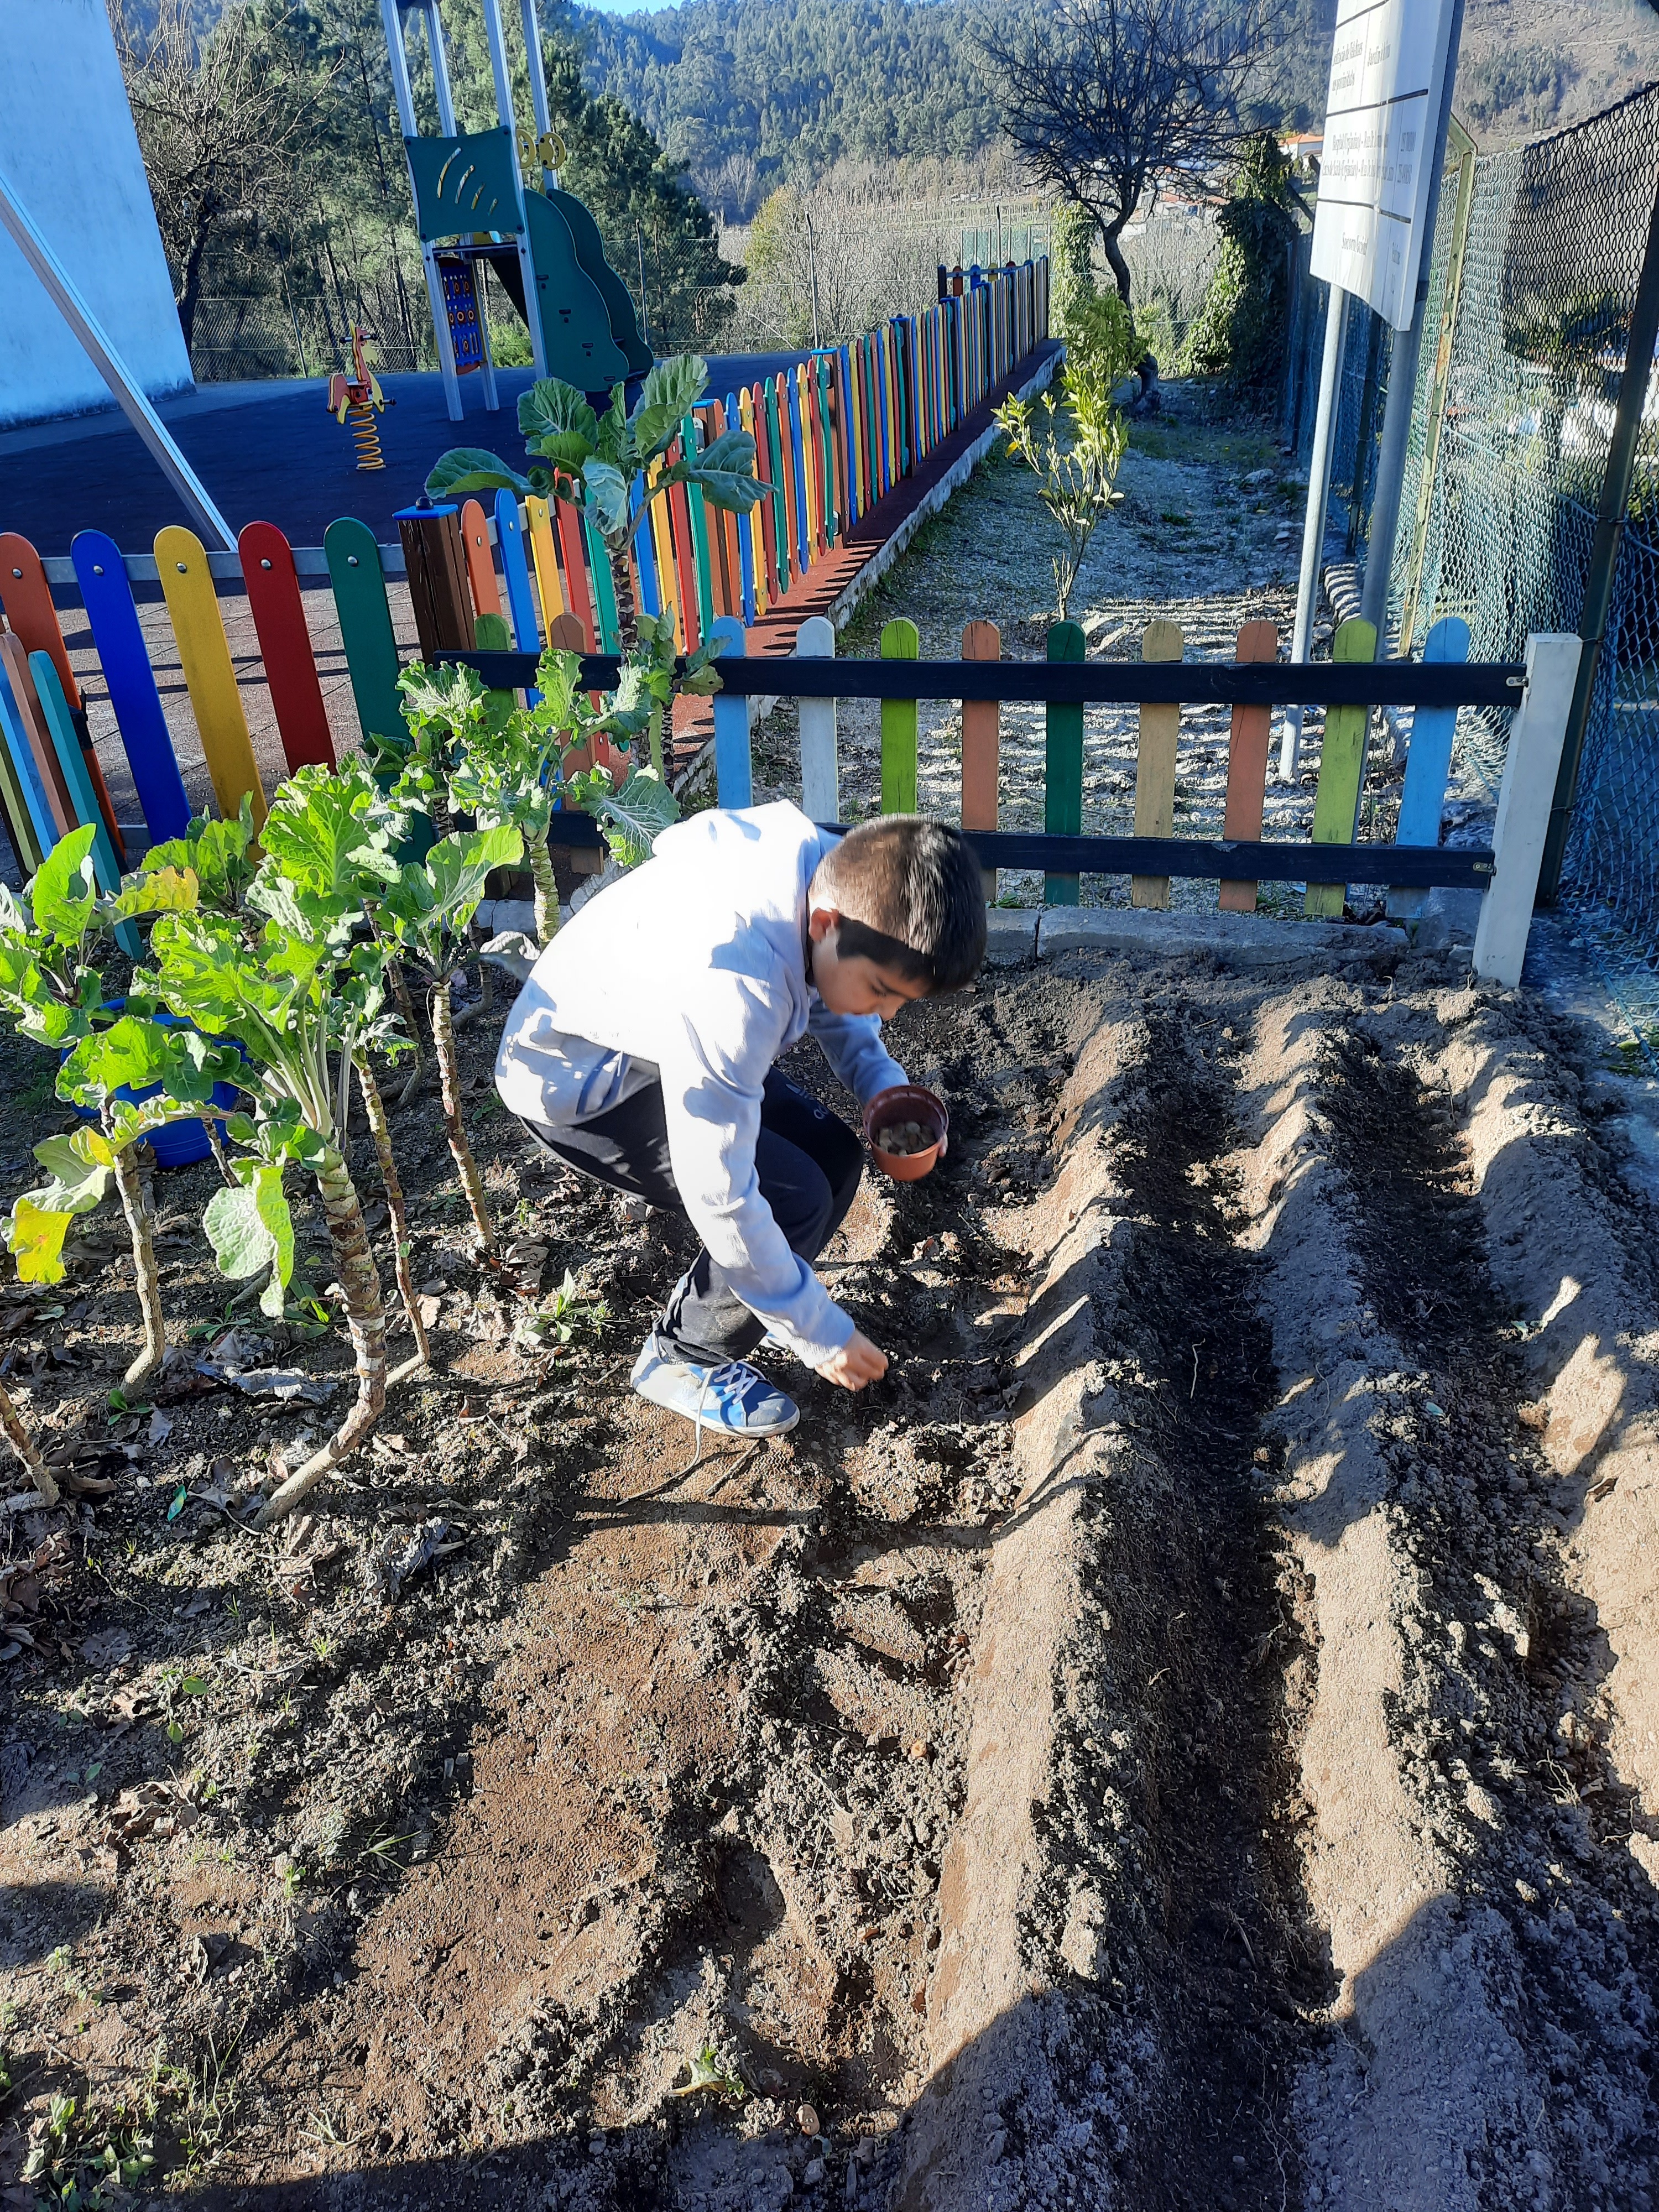 Participação de uma criança do 3º ano na plantação de ervilhas.
Colocar a semente na terra depois de preparada por outras crianças do 3º e 4º ano com a ajuda de um adulto.